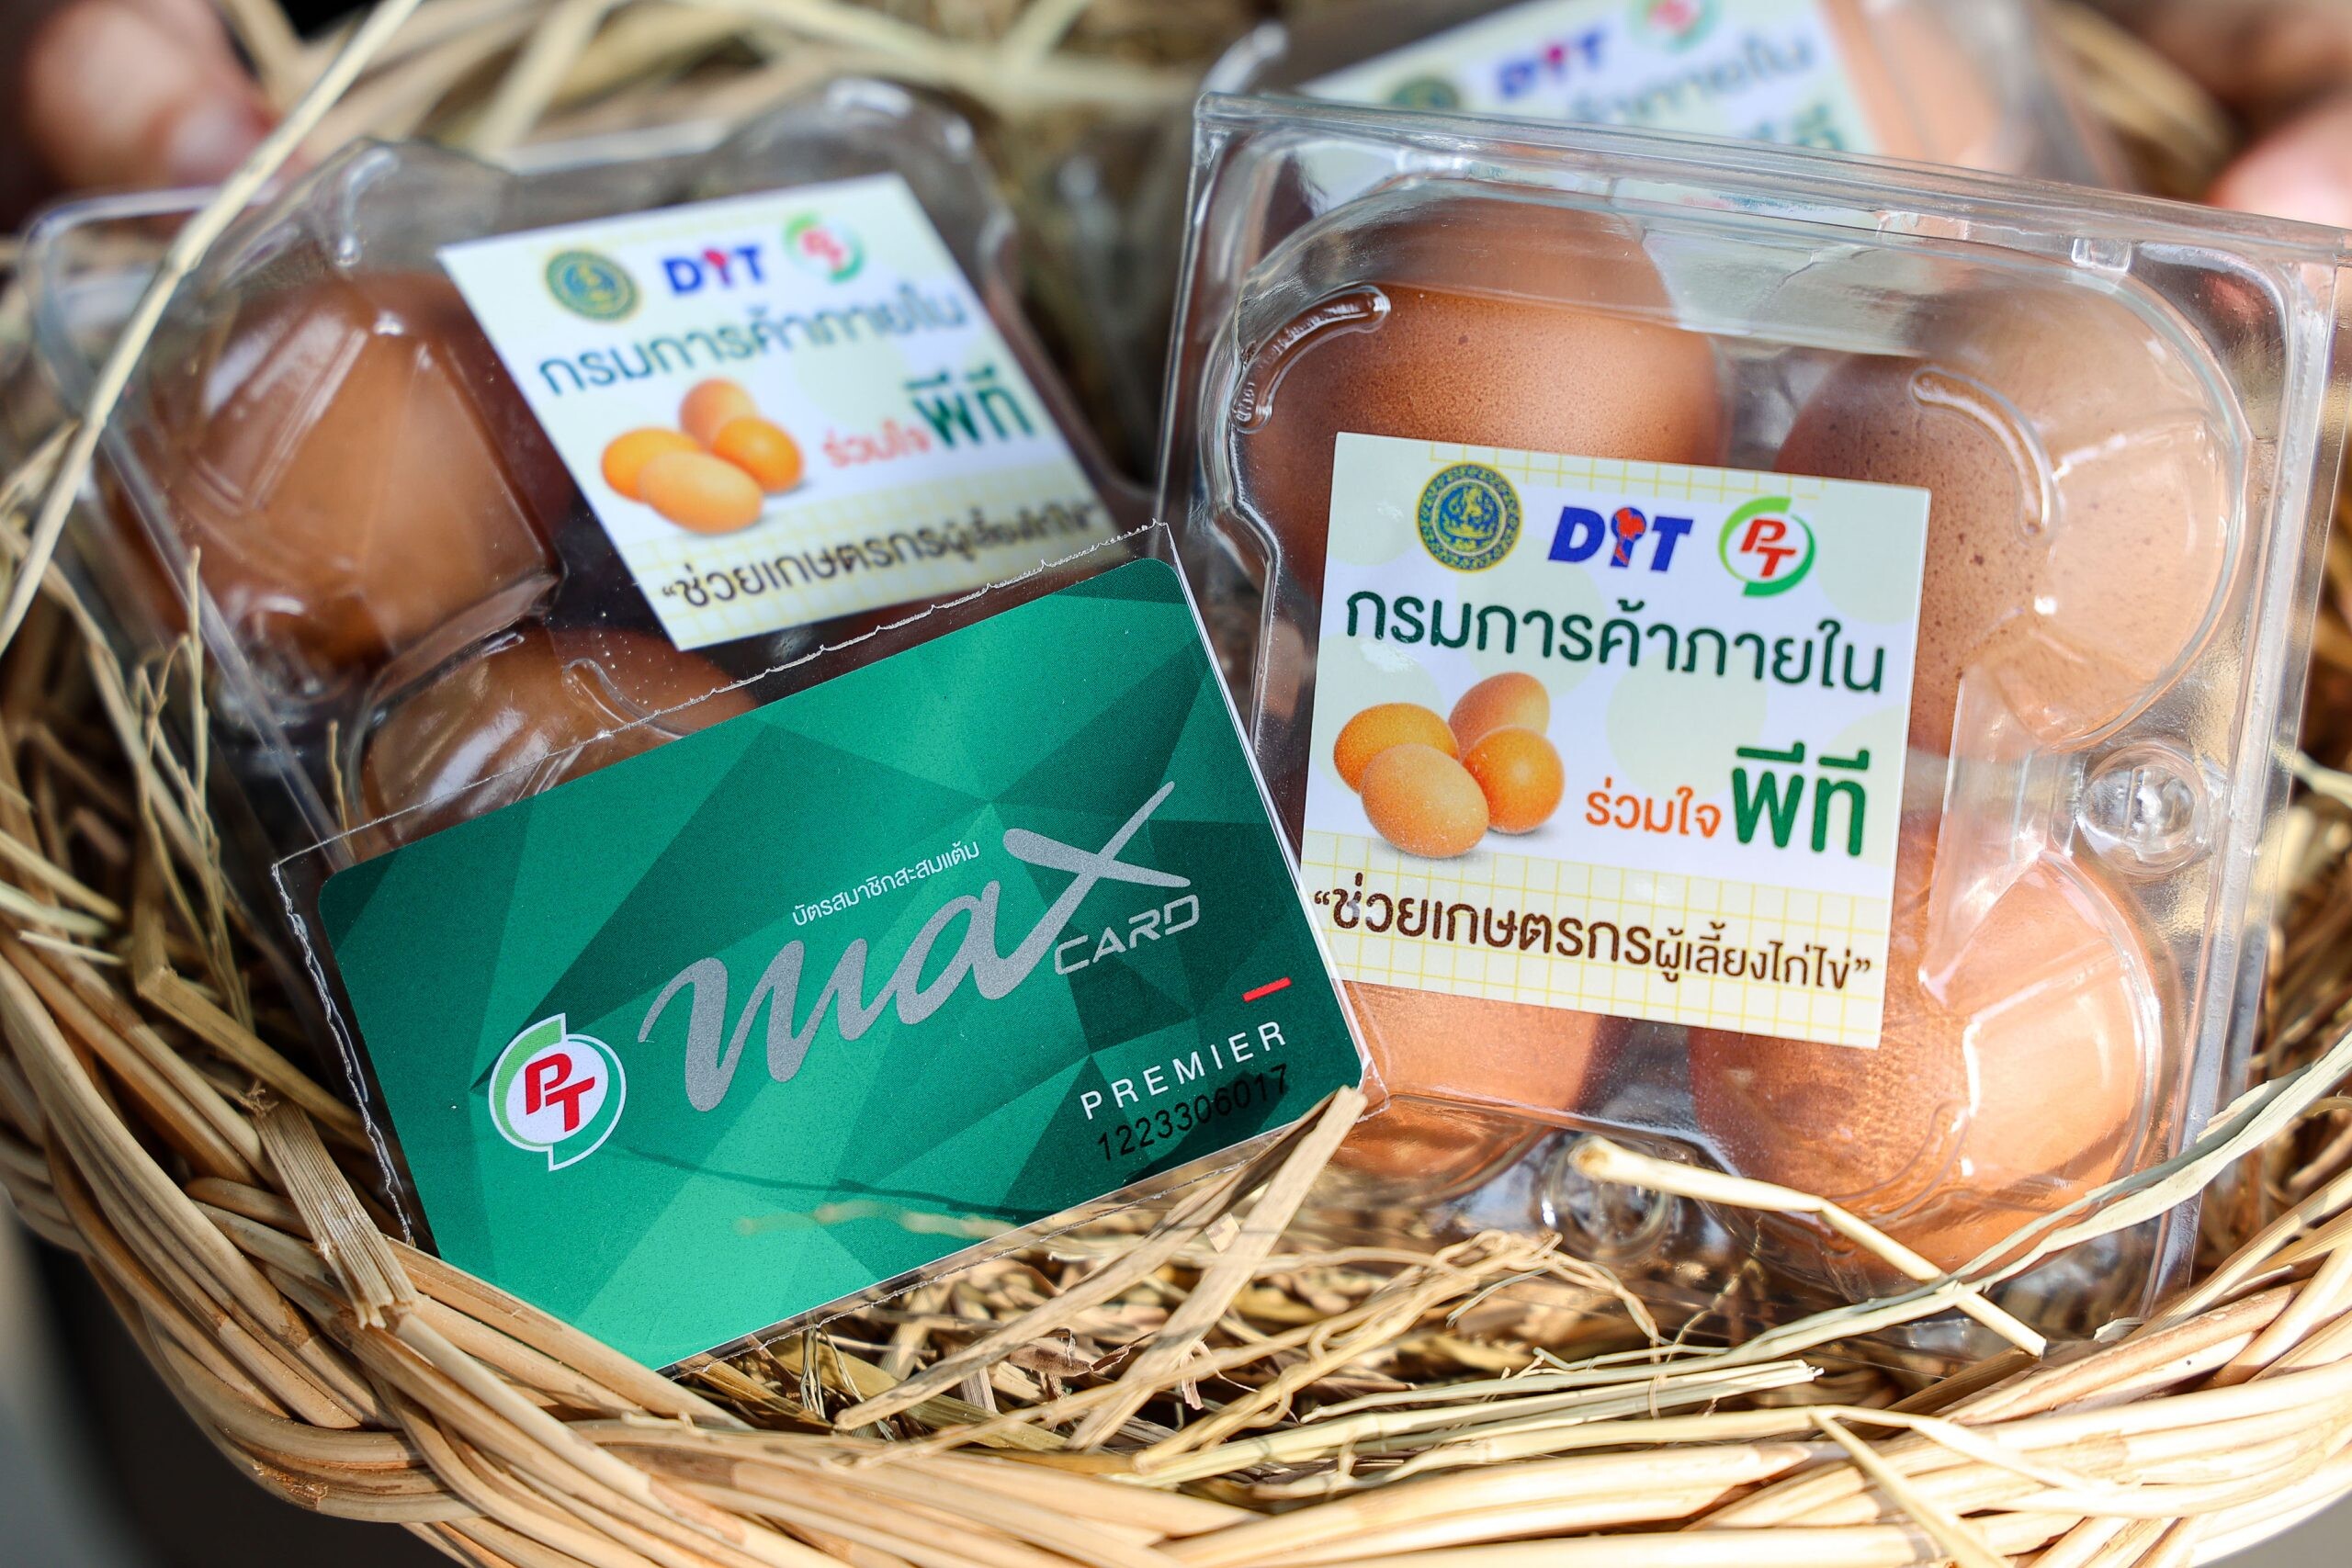 ปั๊ม PT แจกไข่ไก่สมาชิกบัตร "PT Max Card" รับฟรี! ช่วยเกษตรกรแก้ปัญหาไข่ล้นตลาดและสร้างรายได้เพื่อความ "อยู่ดี มีสุข" ตลอดไป